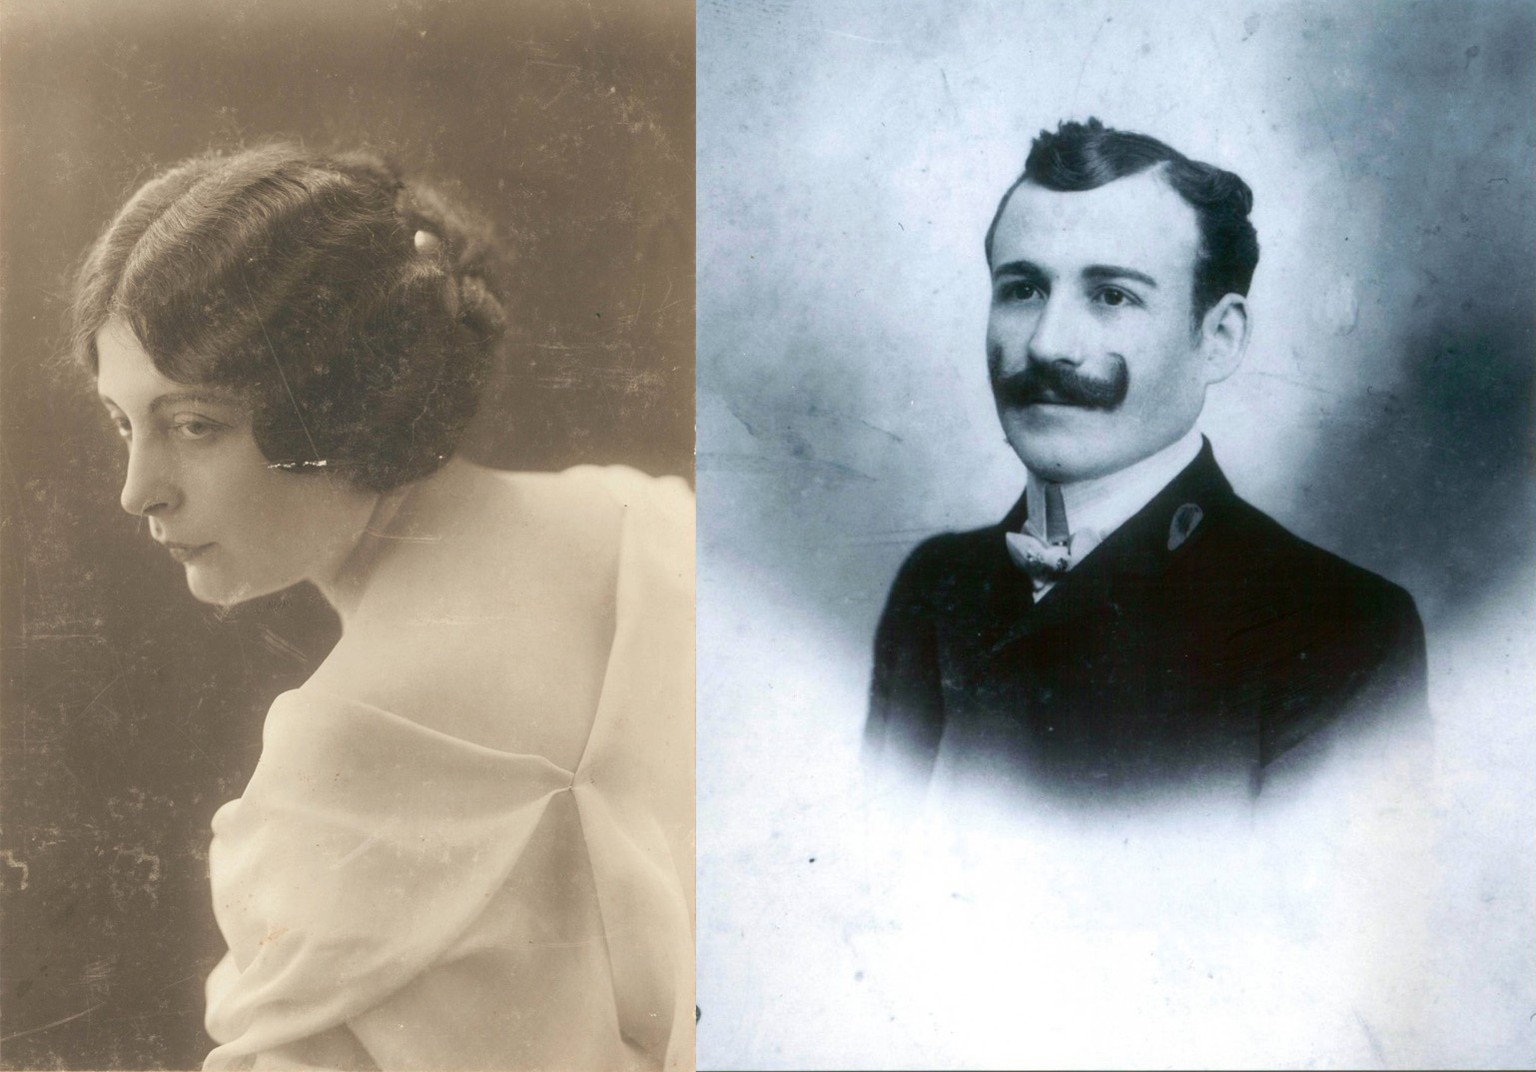 Marcelle Caretto und Michel Navratil heirateten am 26. Mai 1907 in London, doch die Ehe wurde geschieden.